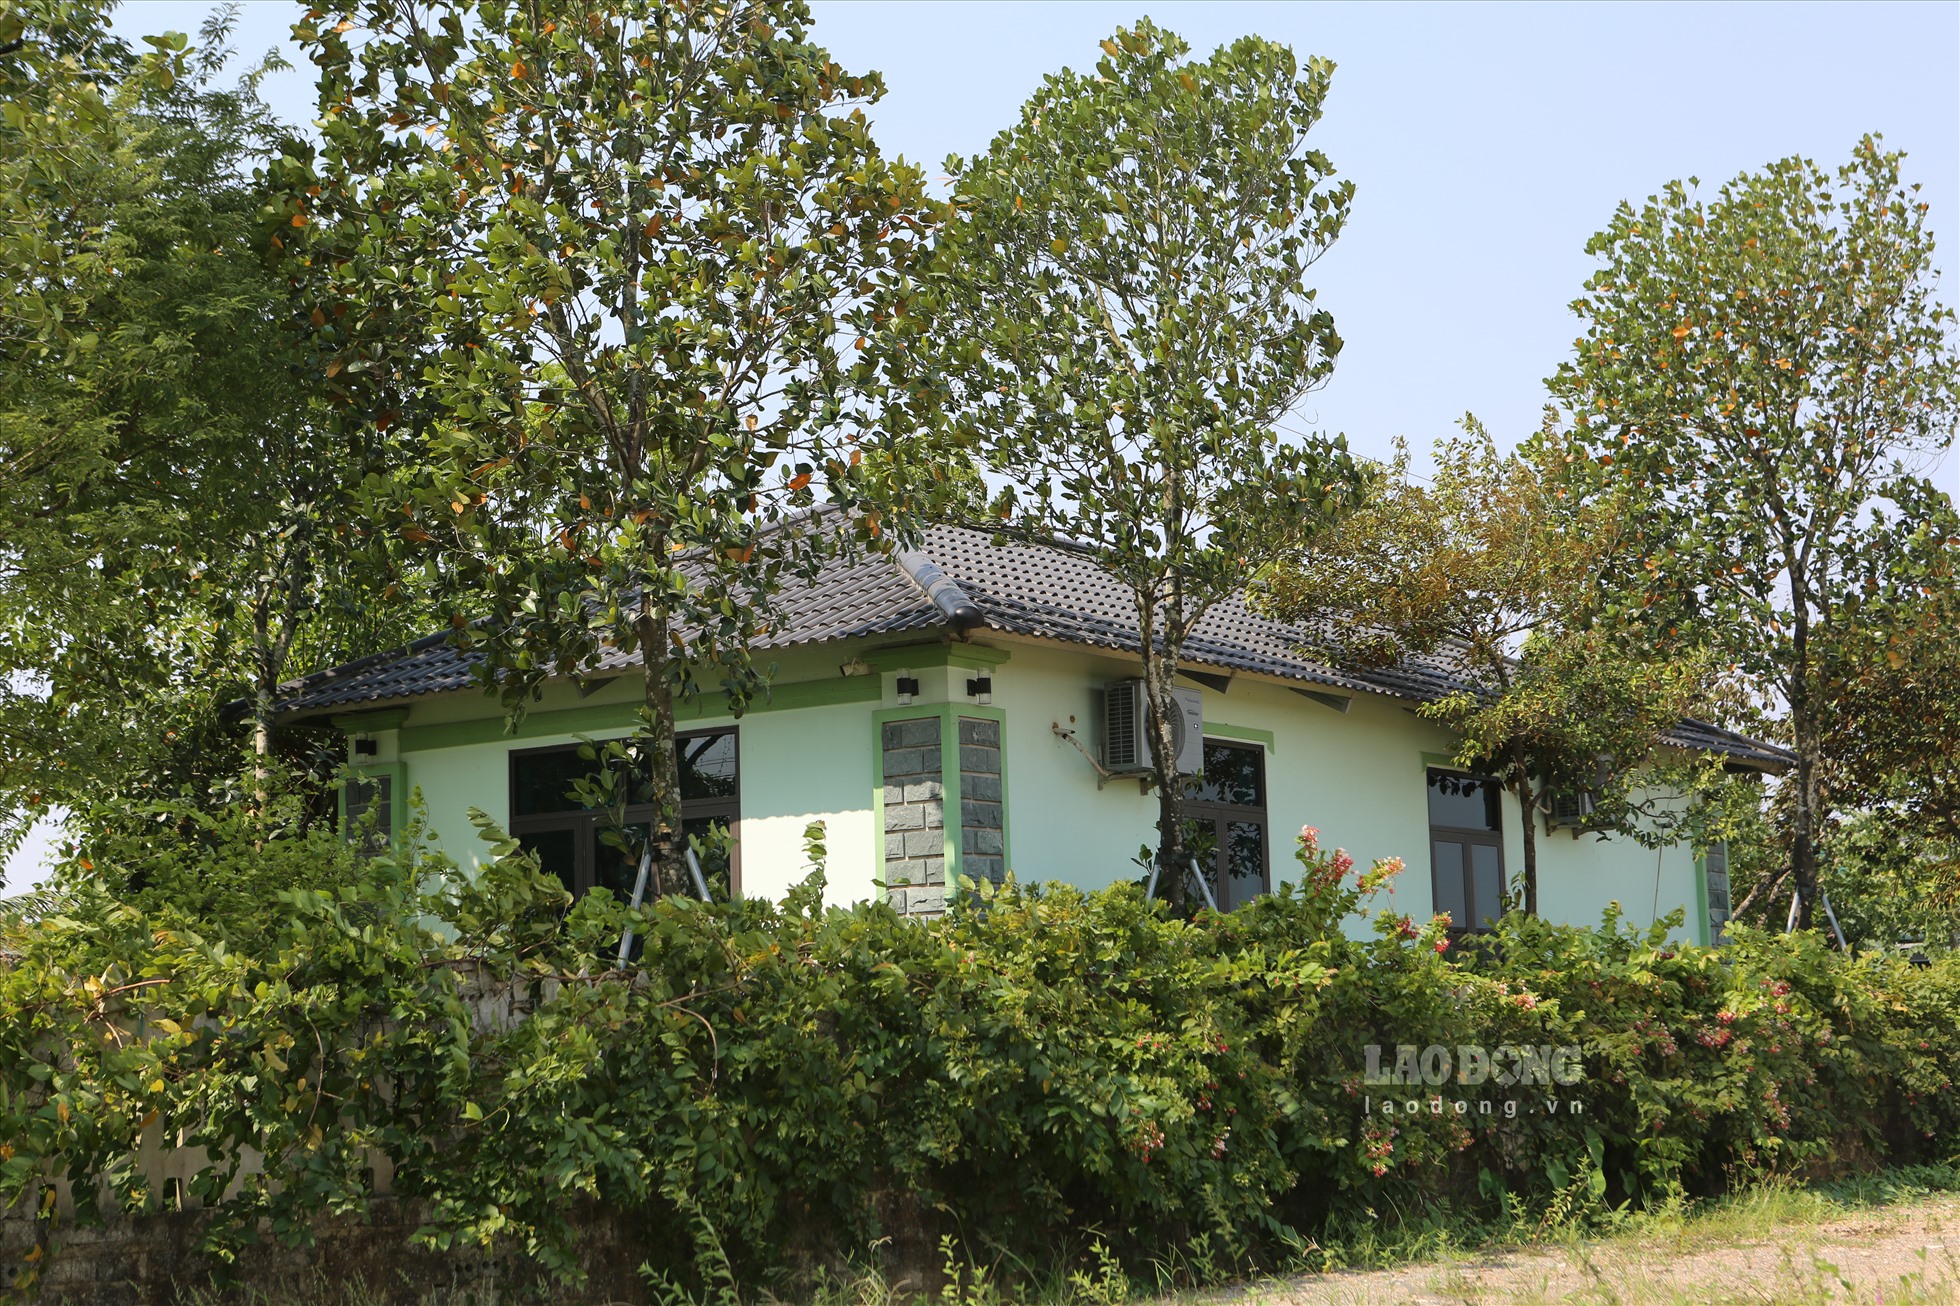 Những ngôi nhà xây kiên cố trong trang trại của các hộ gia đình.